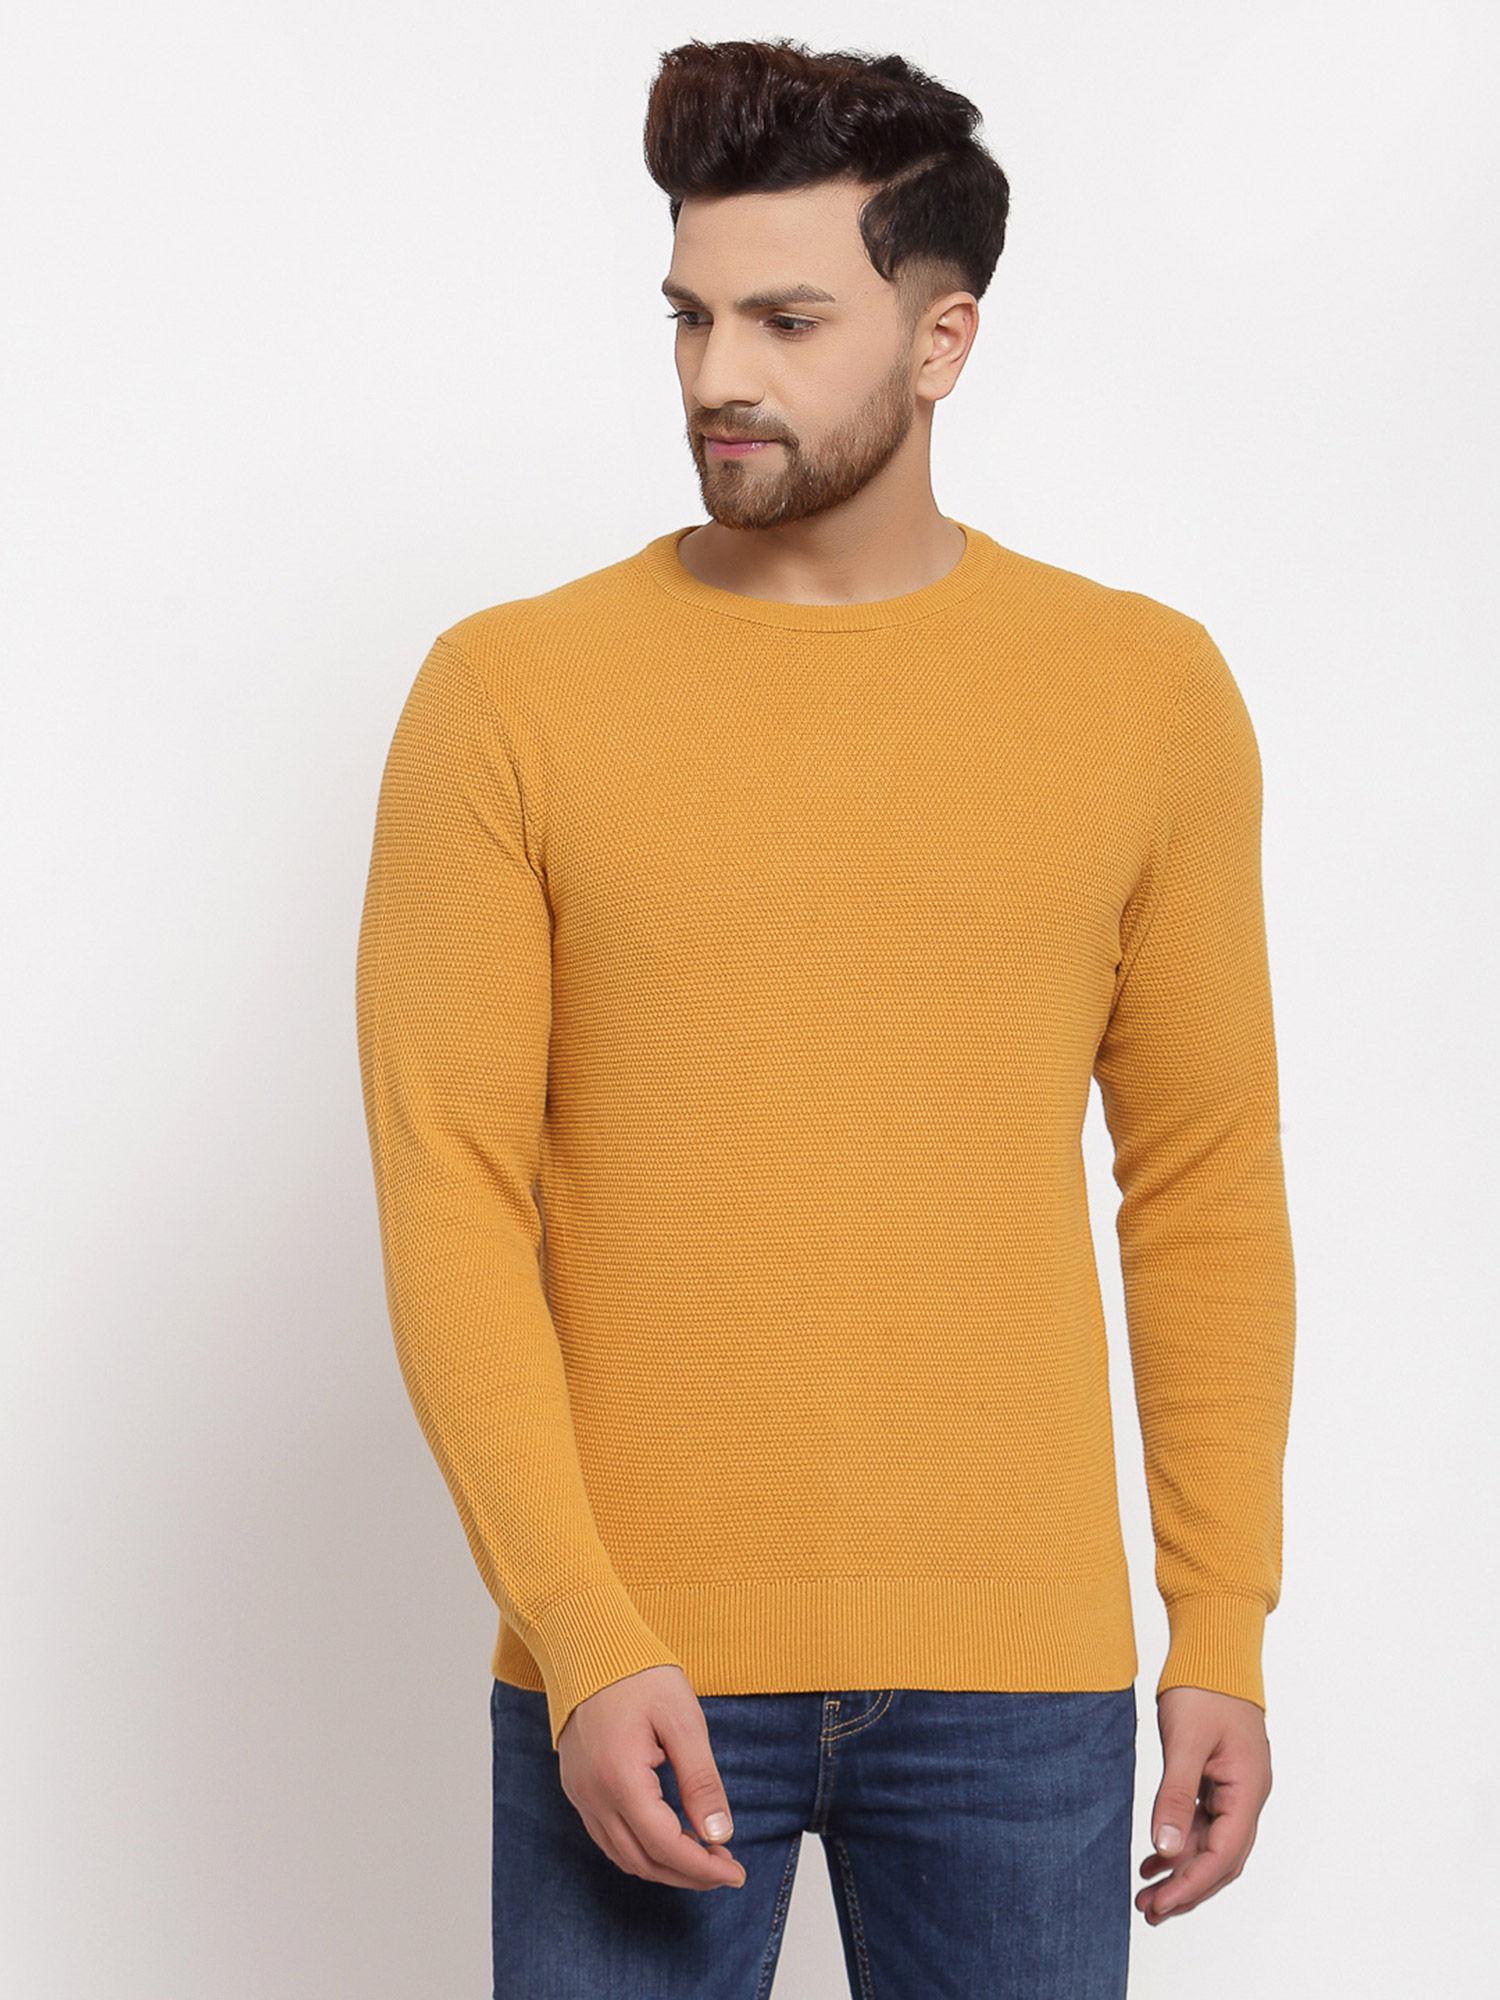 mens yellow sweater